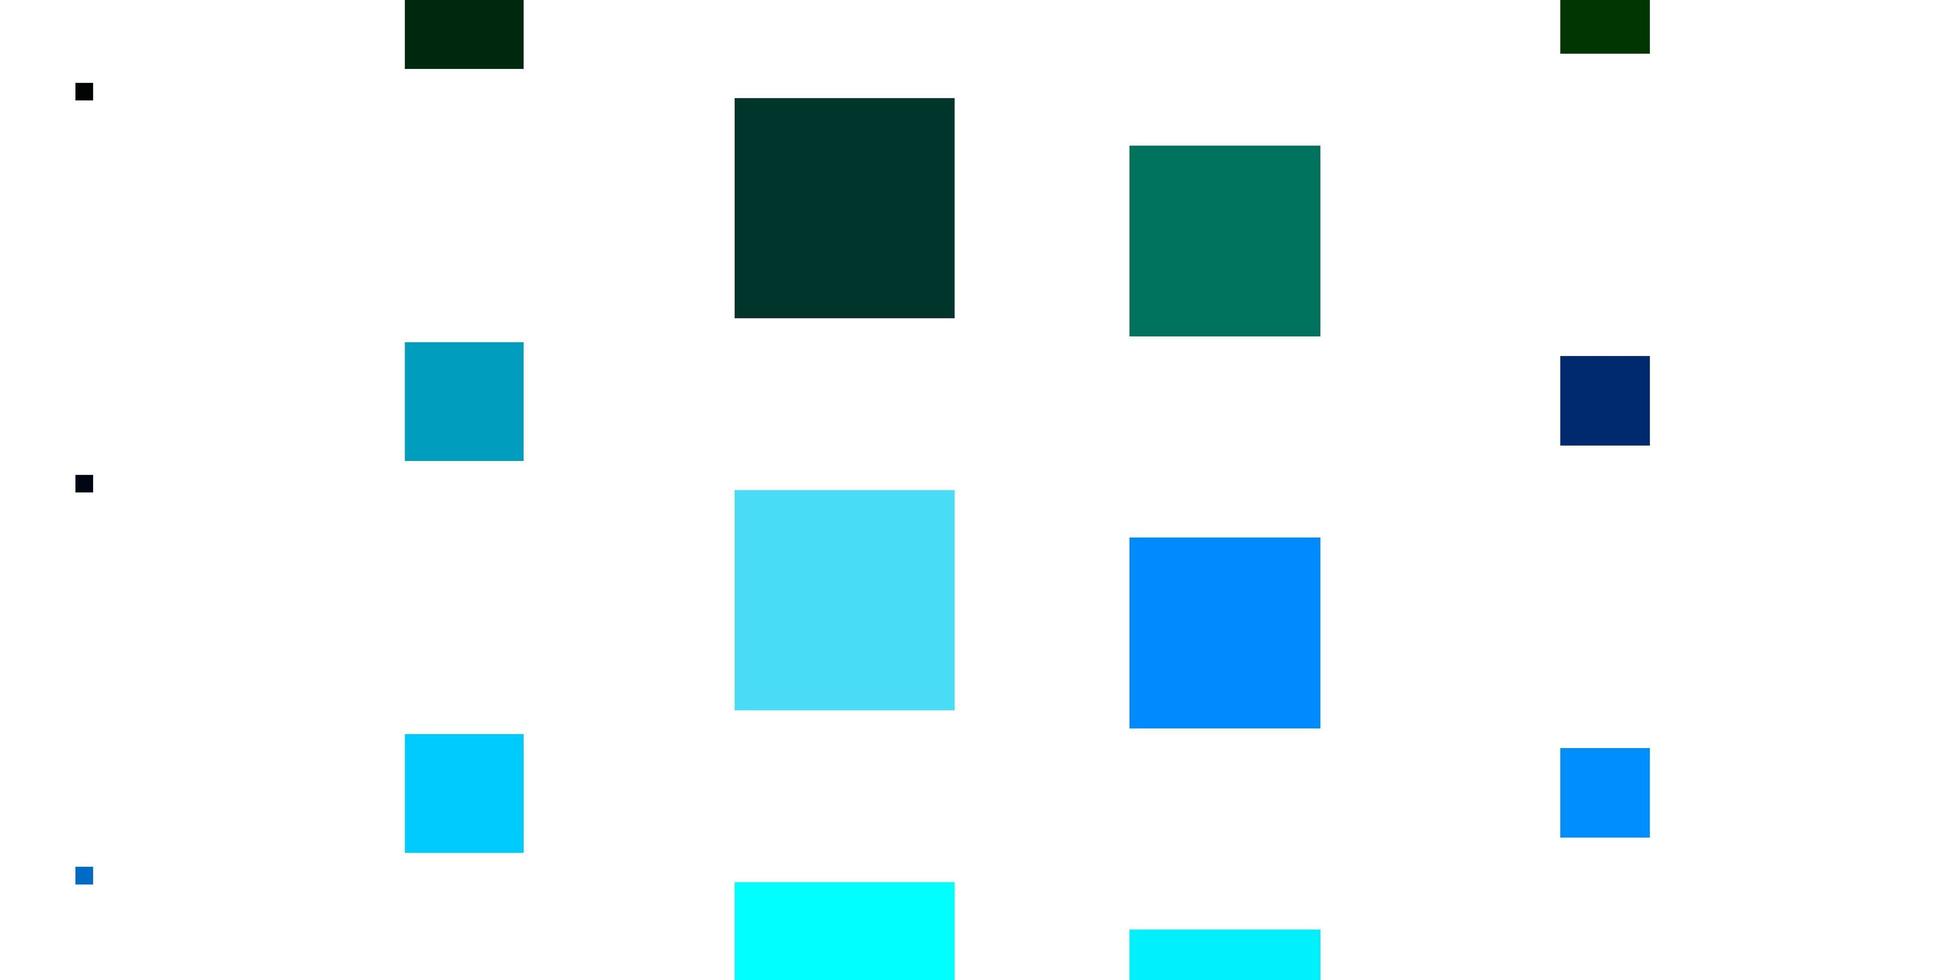 modèle vectoriel bleu clair, vert dans des rectangles. nouvelle illustration abstraite avec des formes rectangulaires. modèle pour téléphones portables.